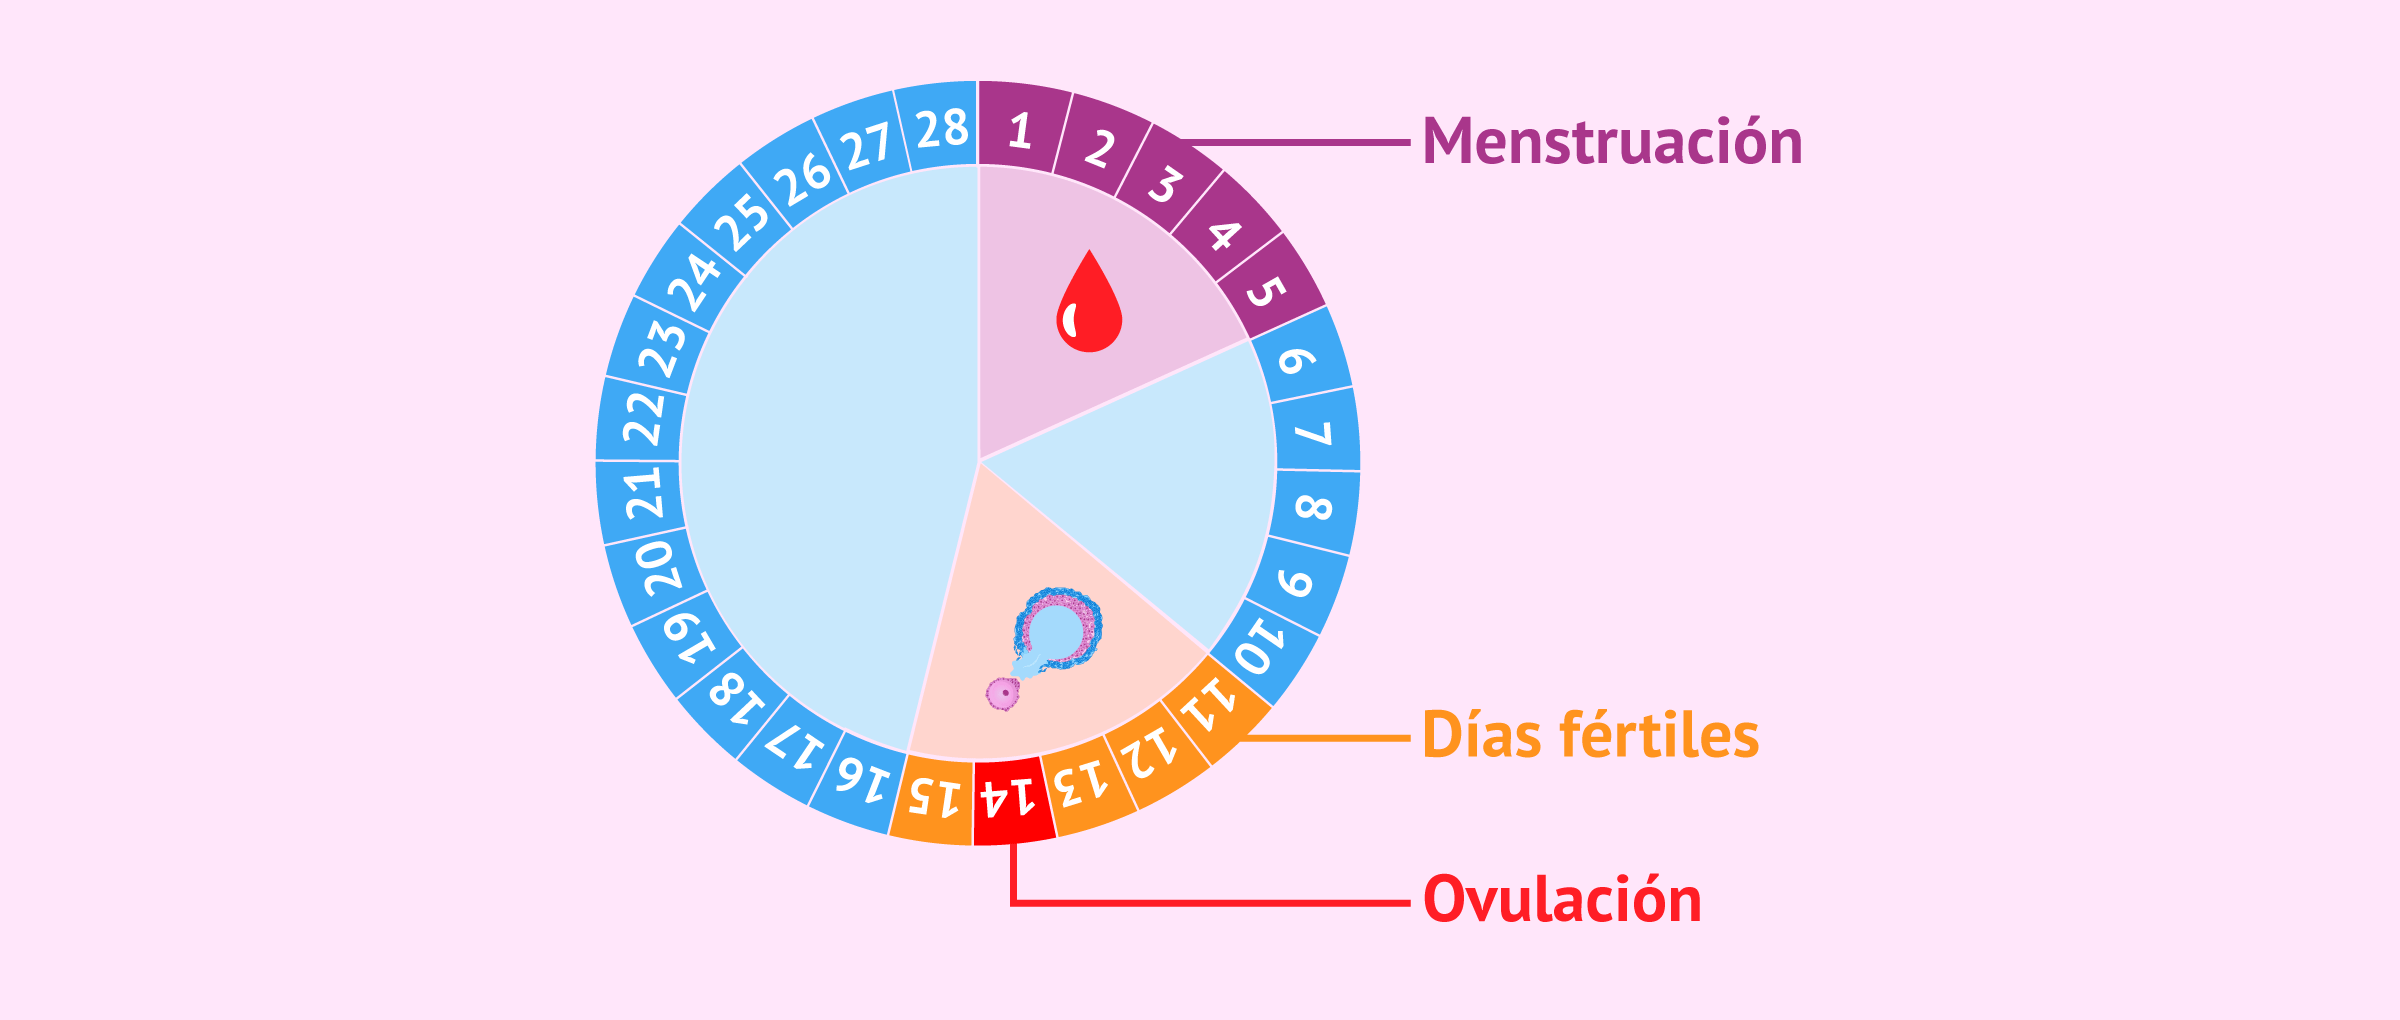 Ovulación y días fértiles